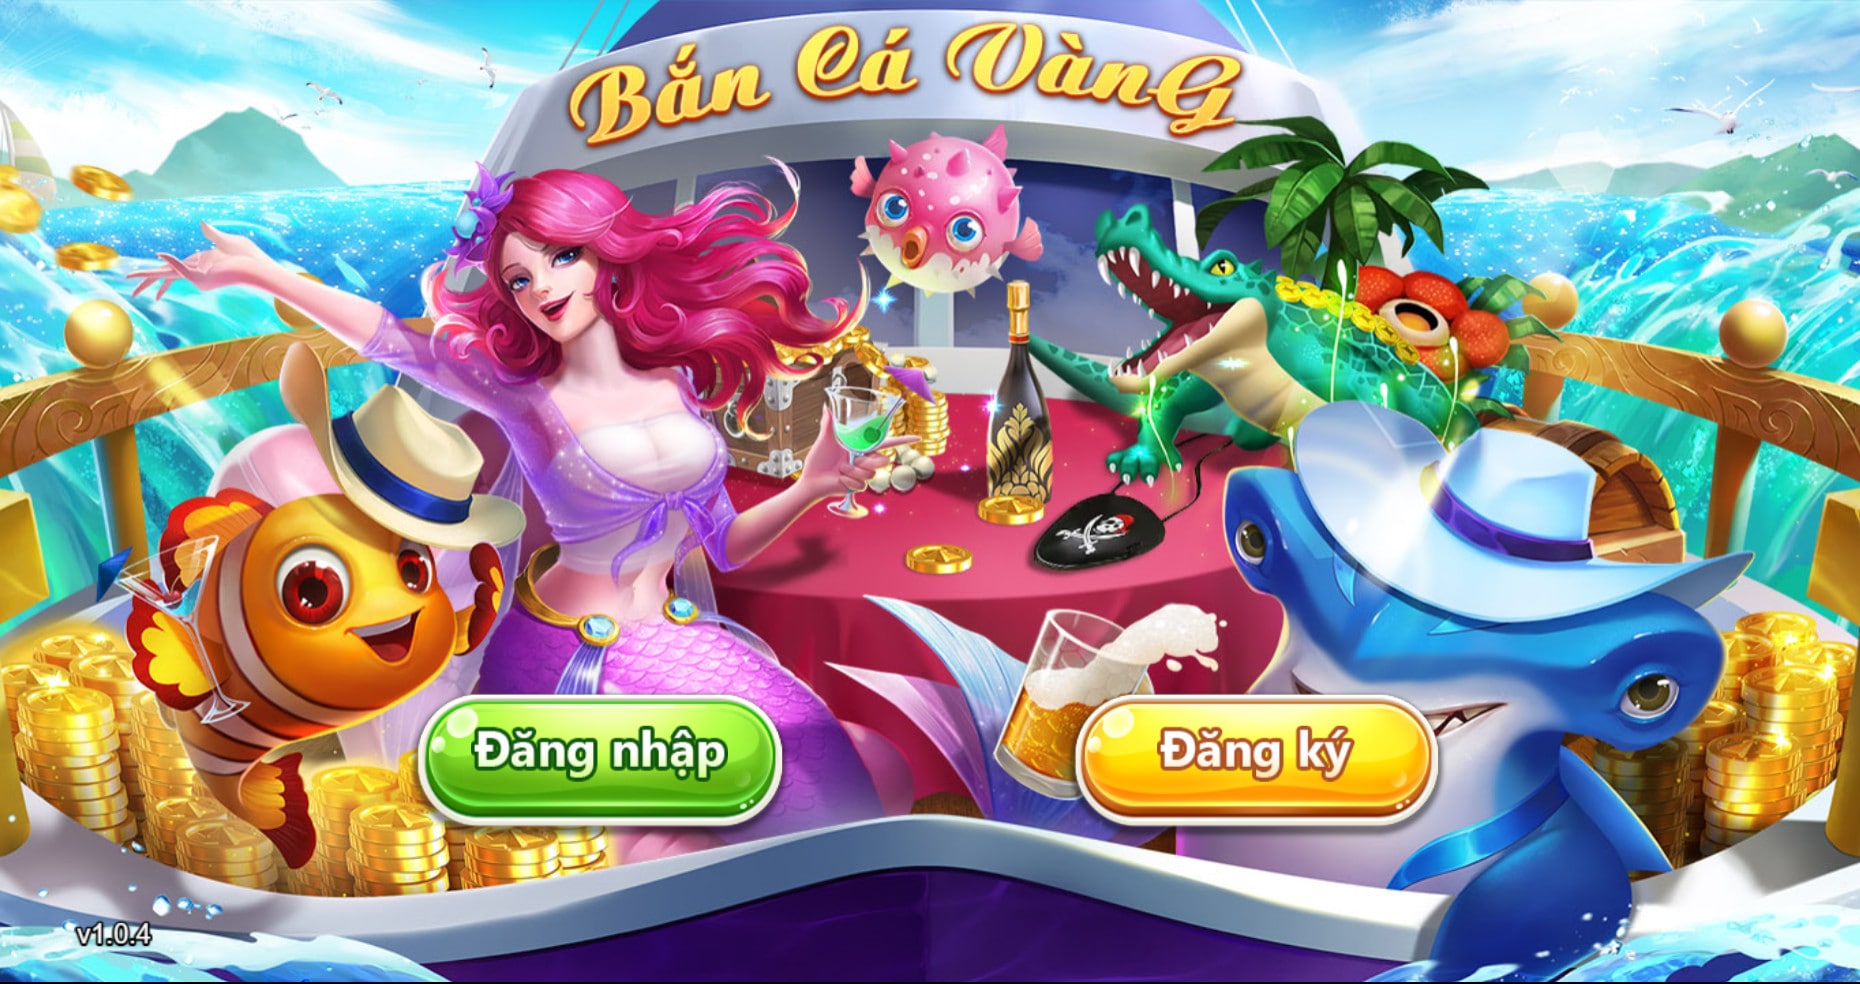 Giới thiệu thông tin về cổng game Bancah5